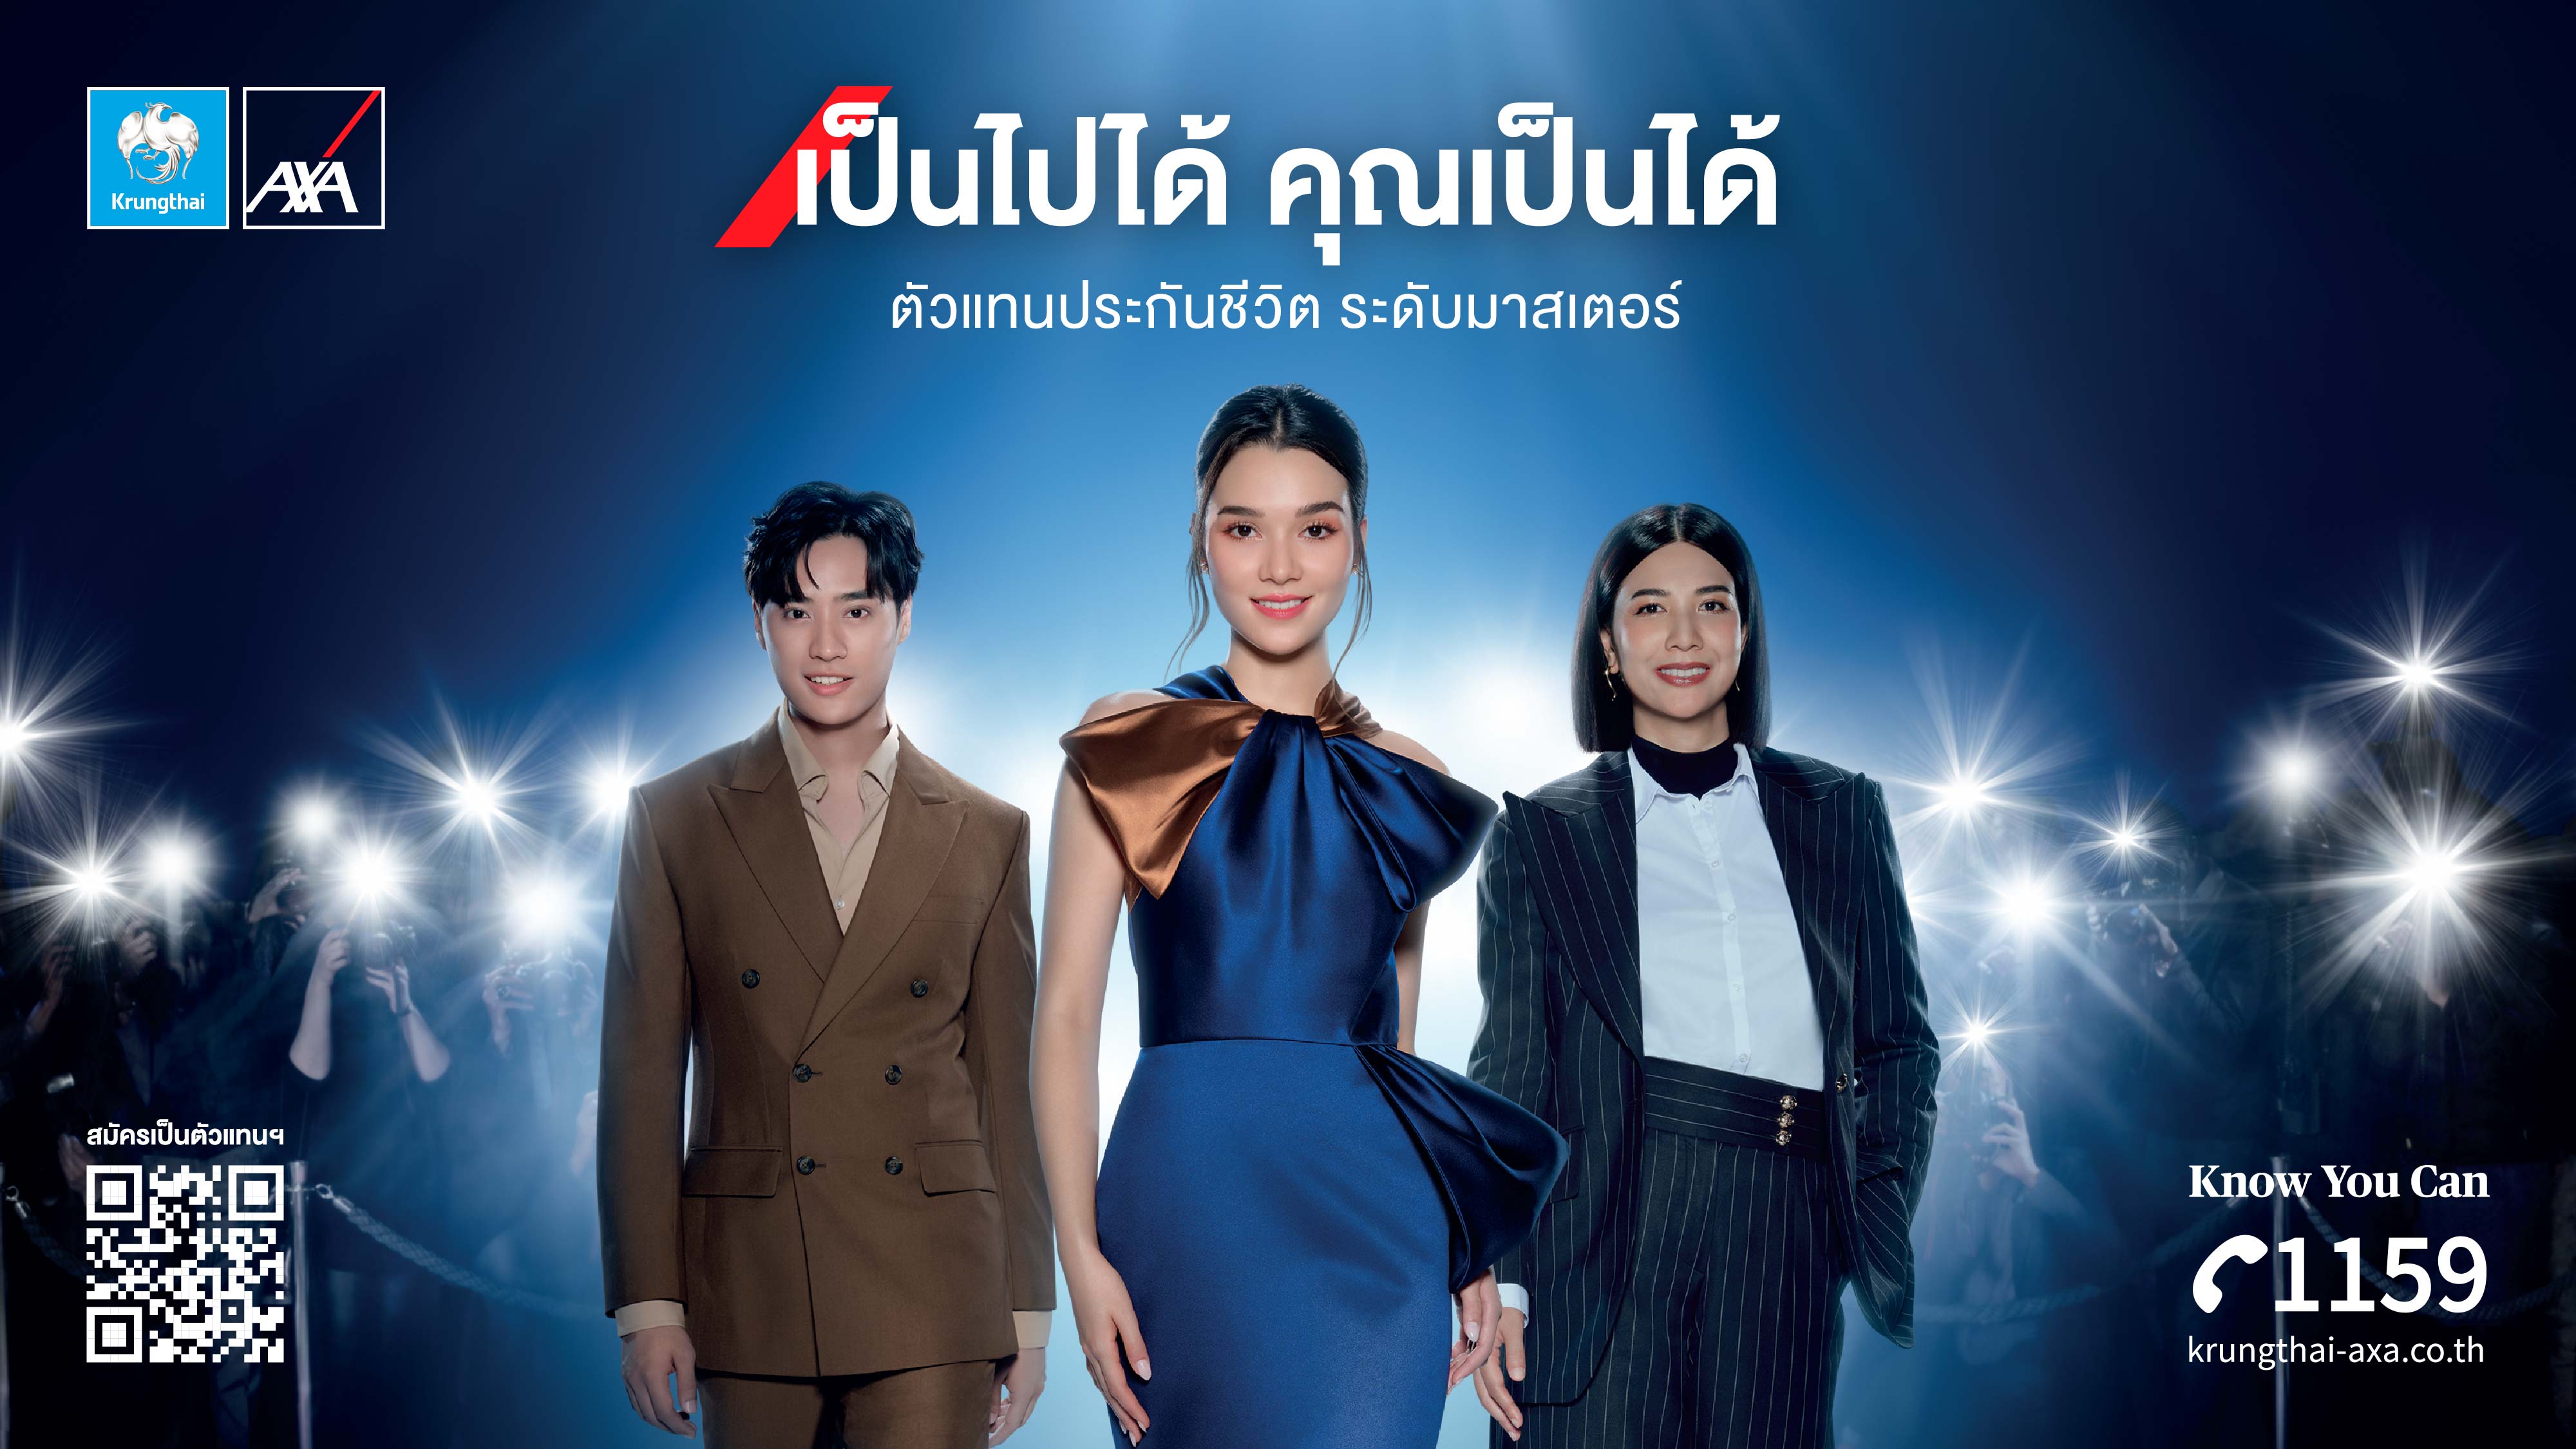 ภาพยนตร์โฆษณาออนไลน์ชุดใหม่ จากกรุงไทยแอกซ่าประกันชีวิต “ตัวแทนประกันชีวิต ระดับมาสเตอร์ เป็นไปได้ คุณเป็นได้”